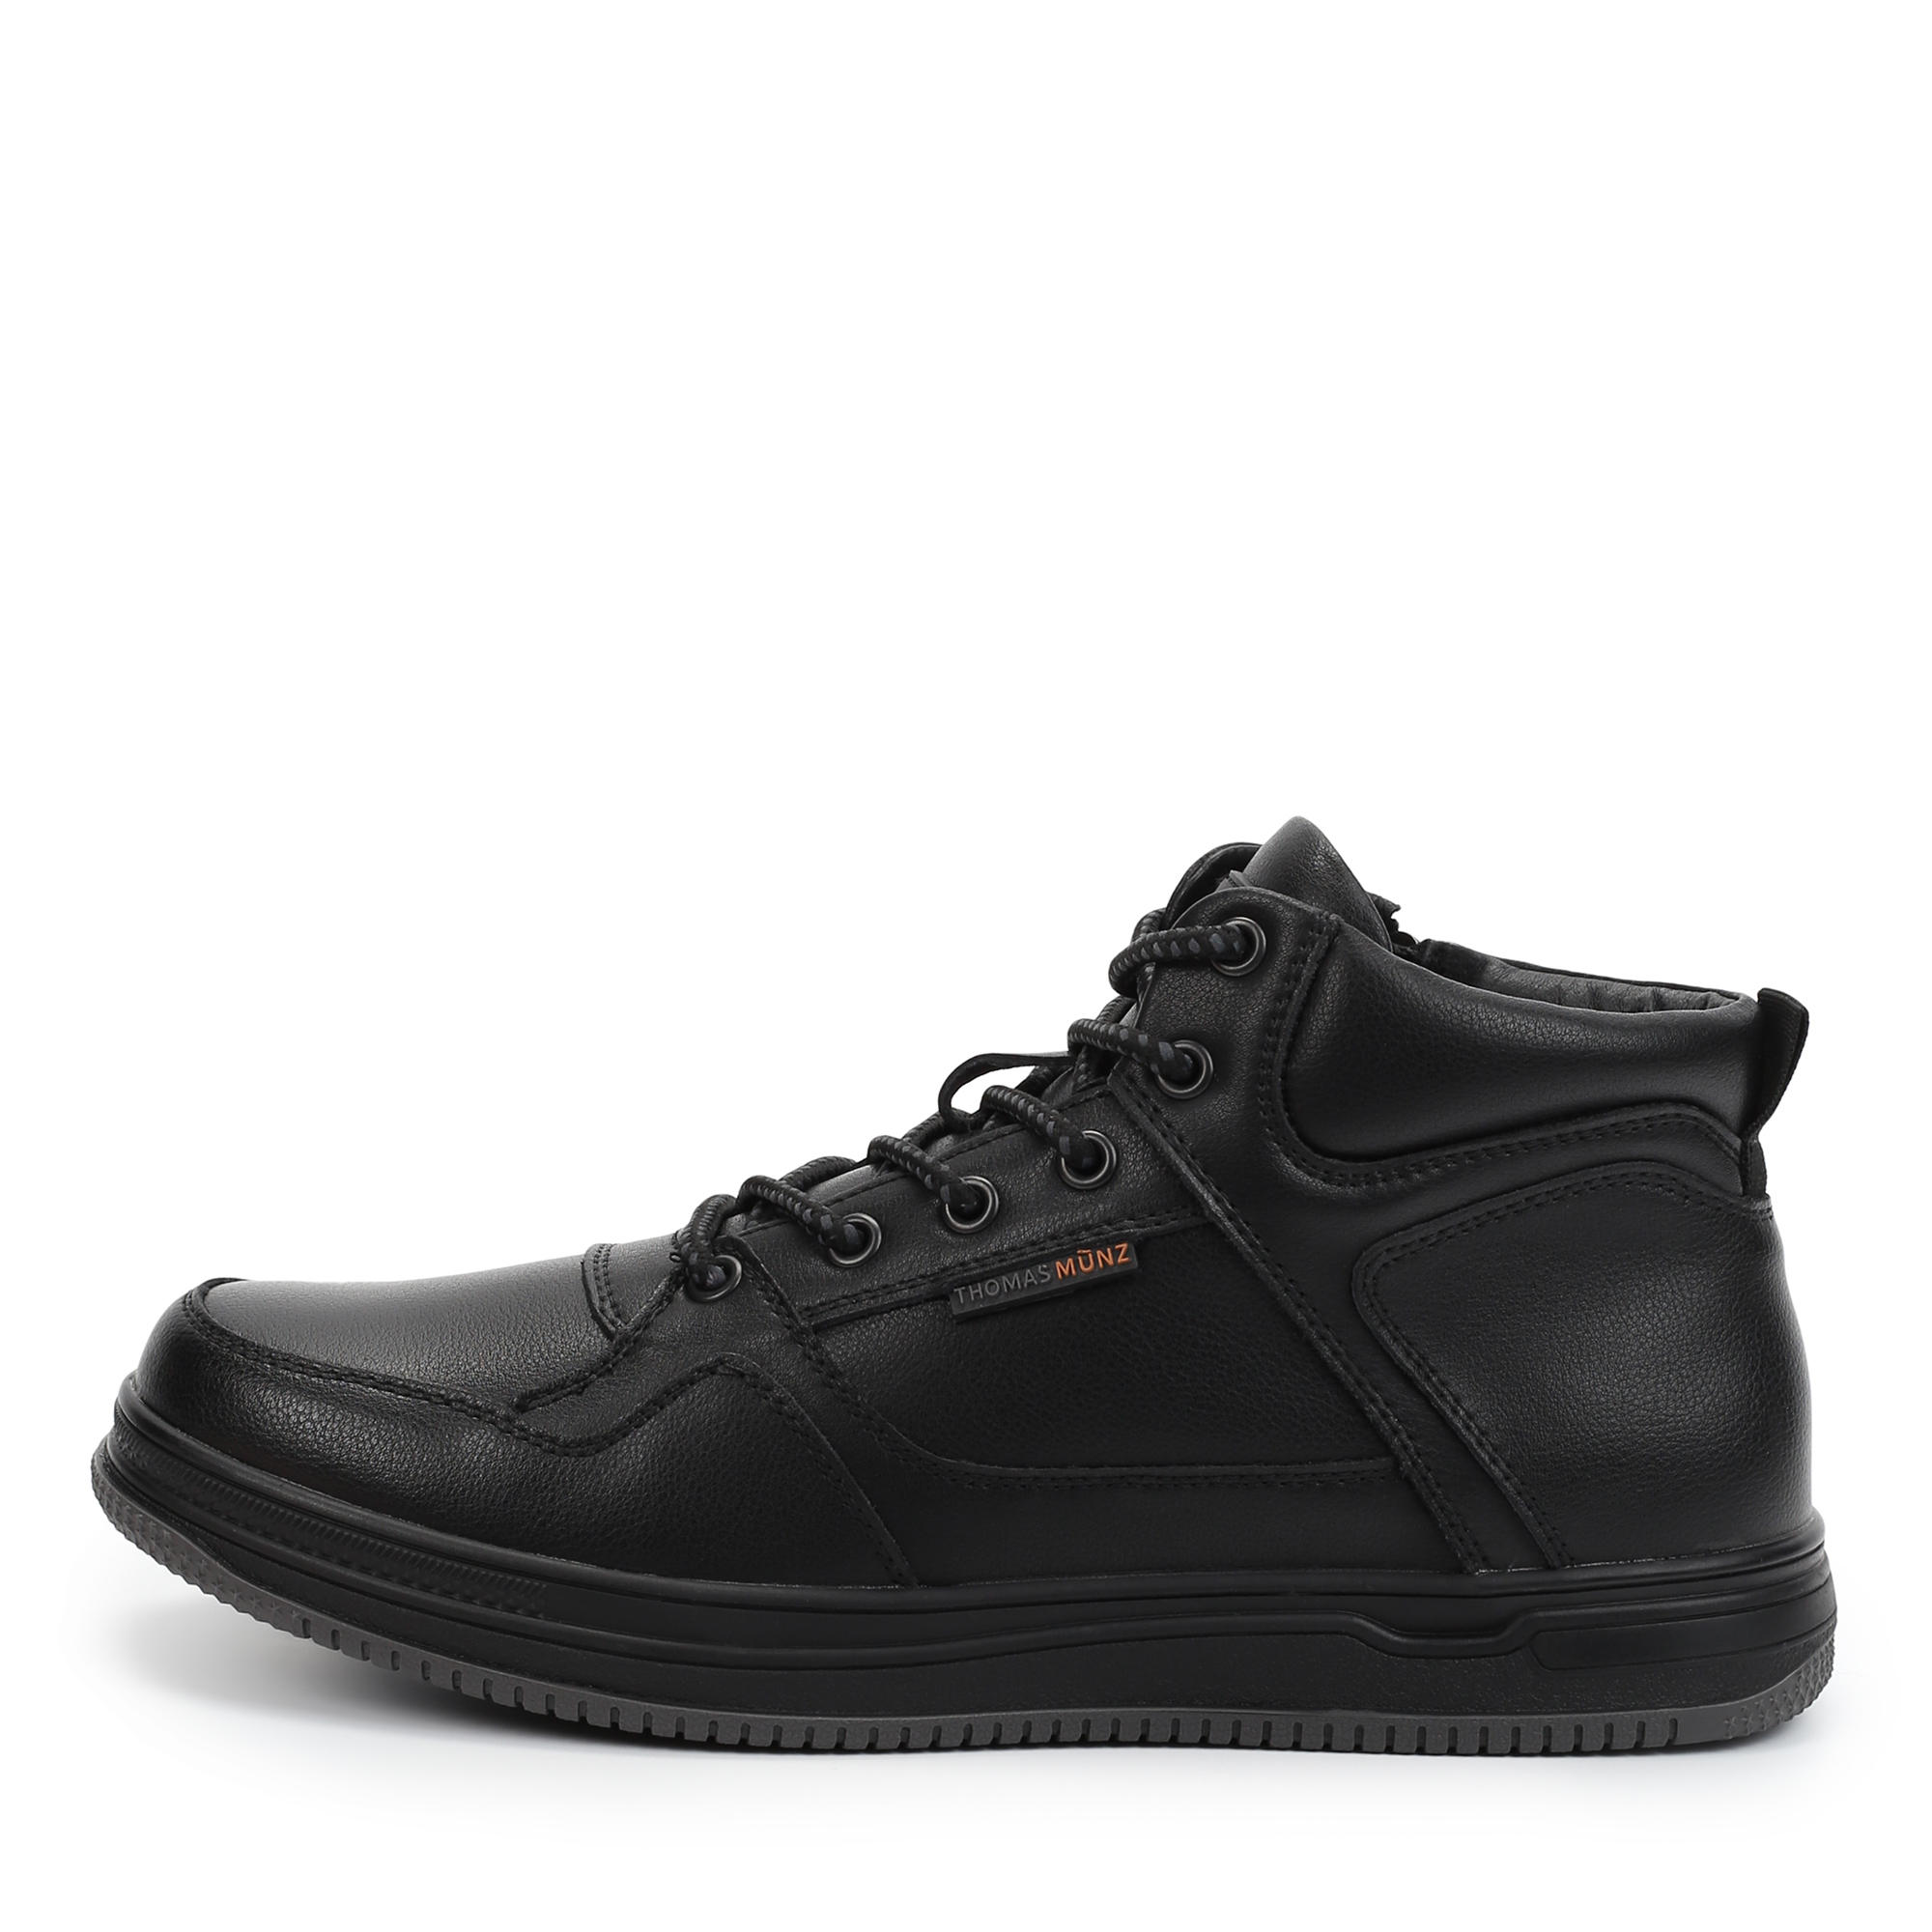 Ботинки Thomas Munz 116-3431A-2602, цвет черный, размер 42 - фото 1